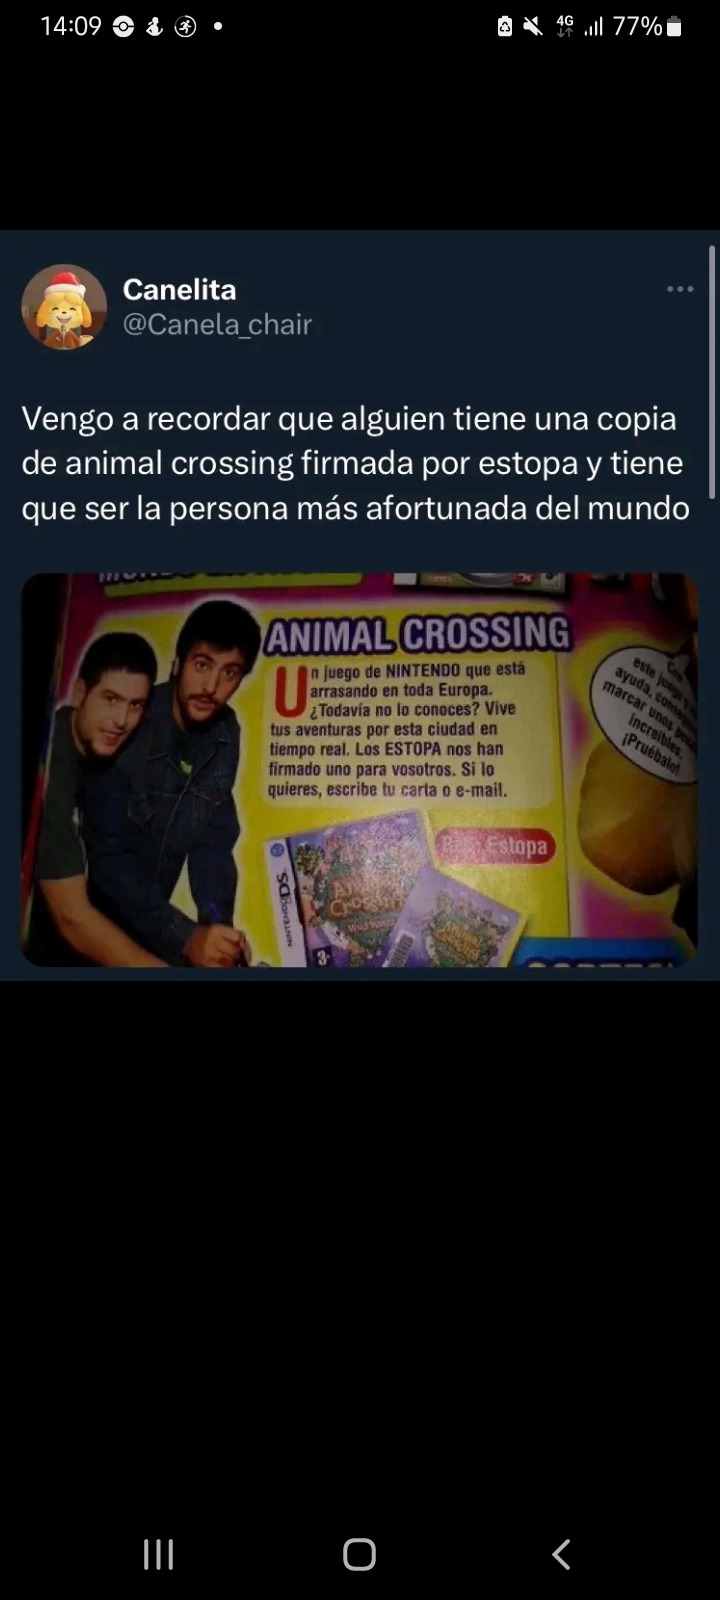 Animal Crossing firmado por Estopa  - meme